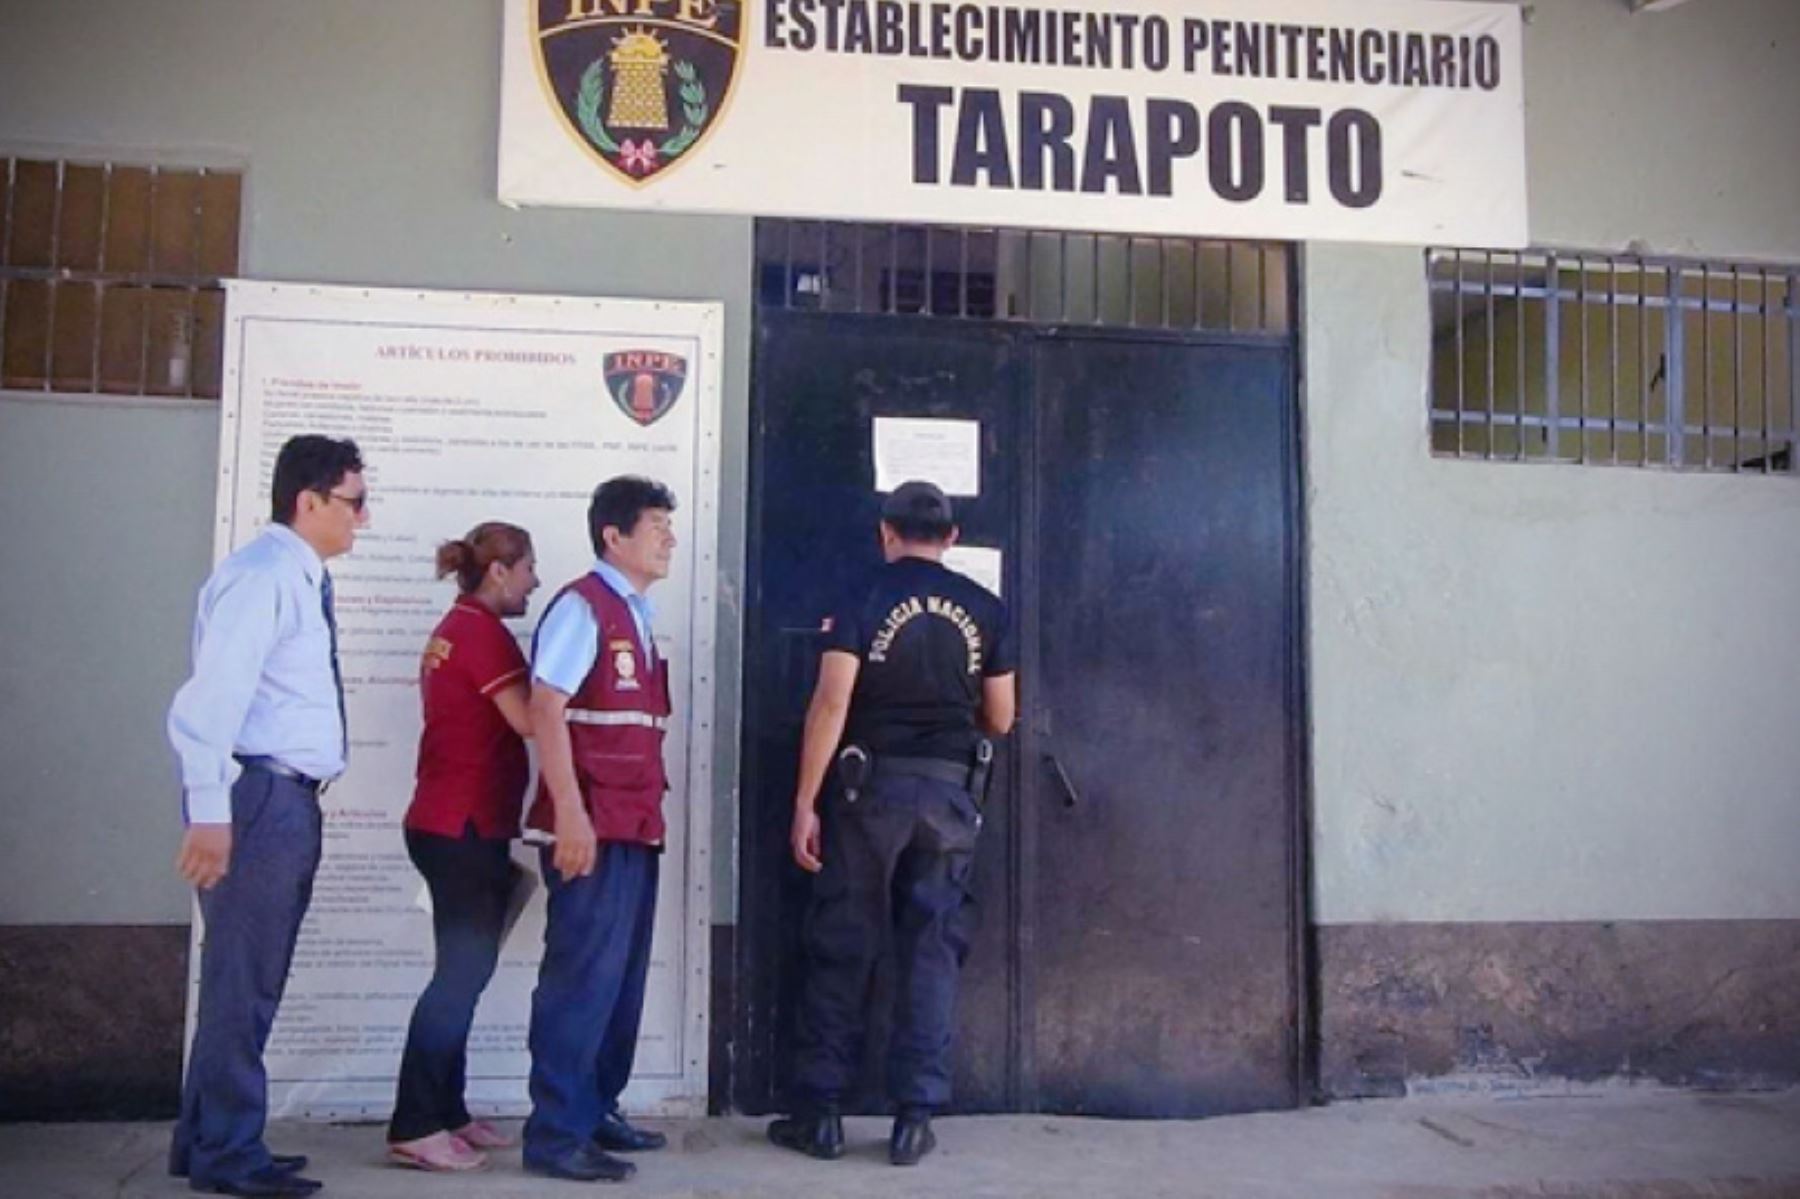 El Instituto Nacional Penitenciario (Inpe) informó que viene investigando la fuga de tres internos ocurrida en el establecimiento penitenciario de Tarapoto.